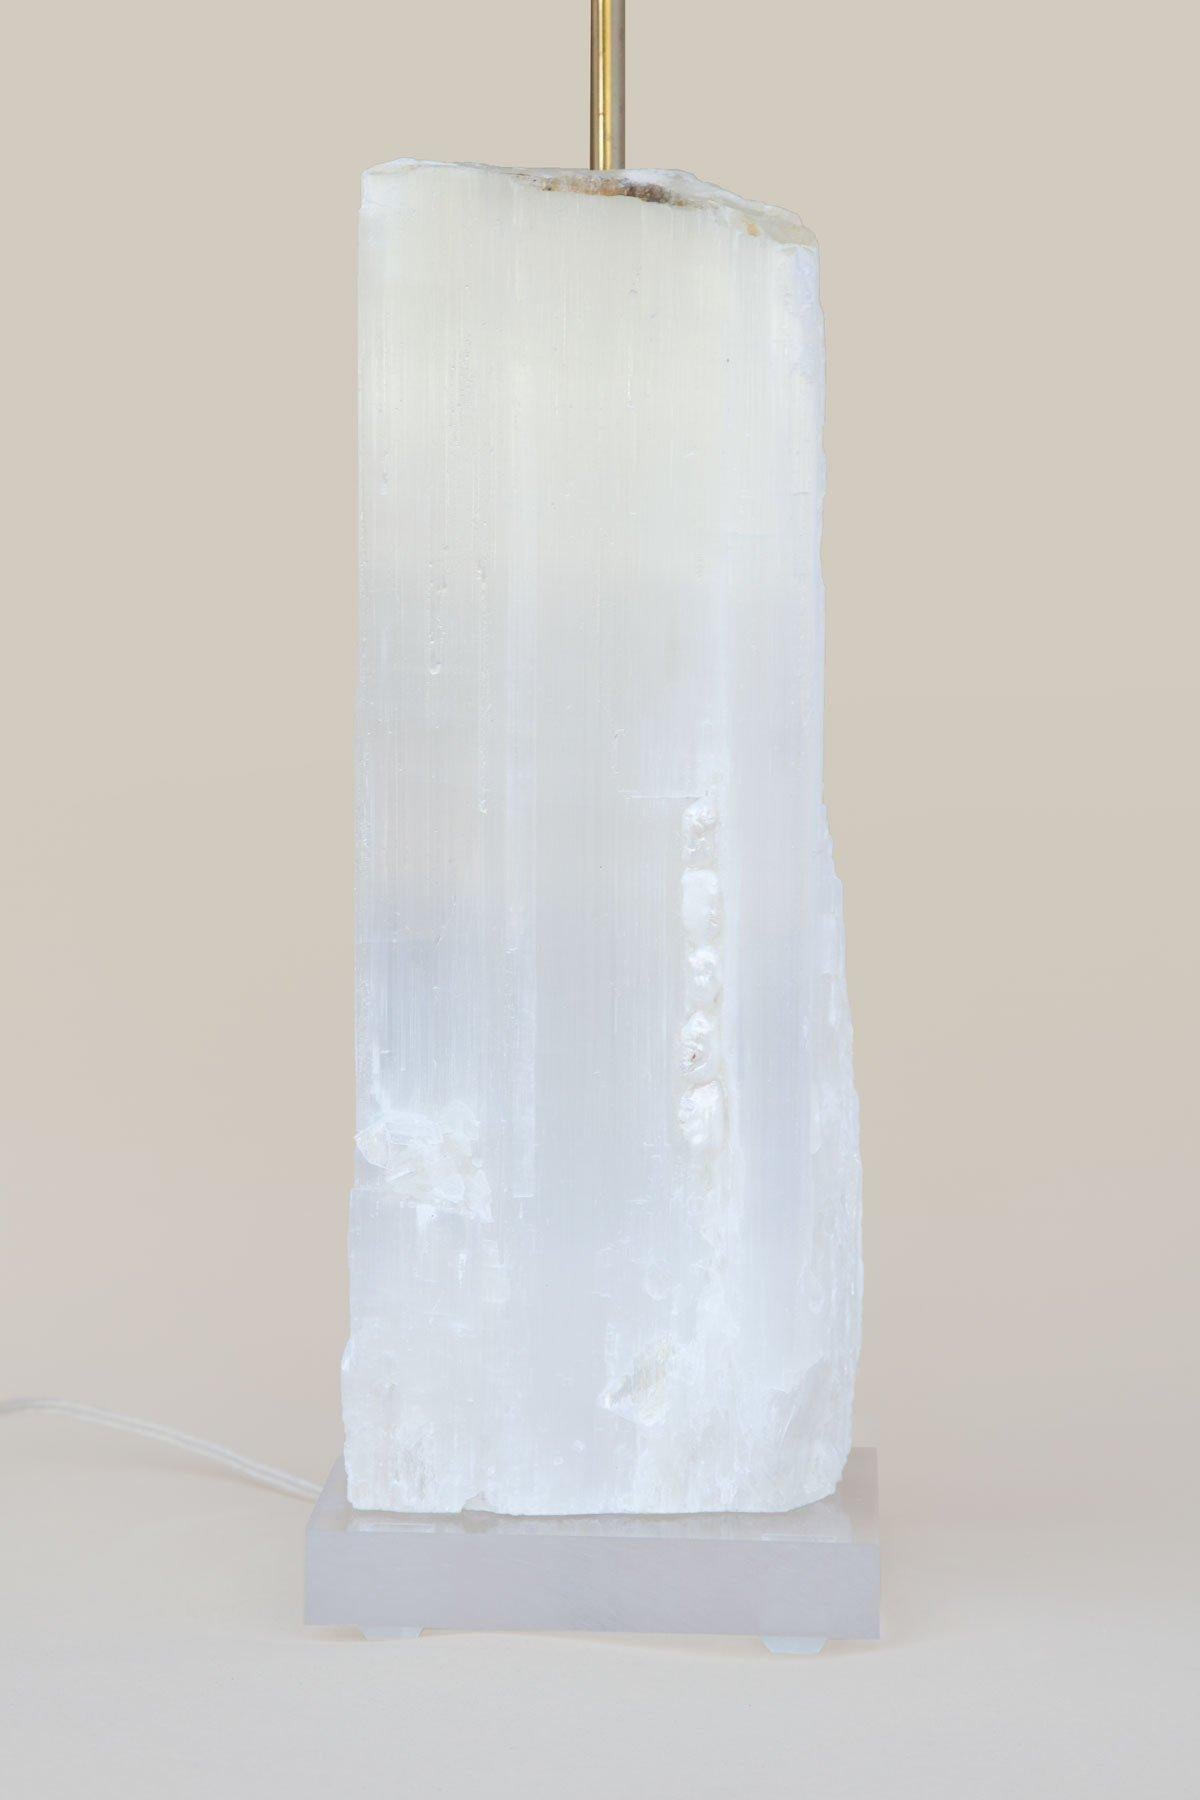 Une lampe de règle en sélénite avec des perles baroques sur de la lucite. 

La sélénite de Ruler est constituée de cristaux prismatiques uniques provenant du Maroc qui se sont formés dans des lits étendus par l'évaporation de saumure océanique. Ce